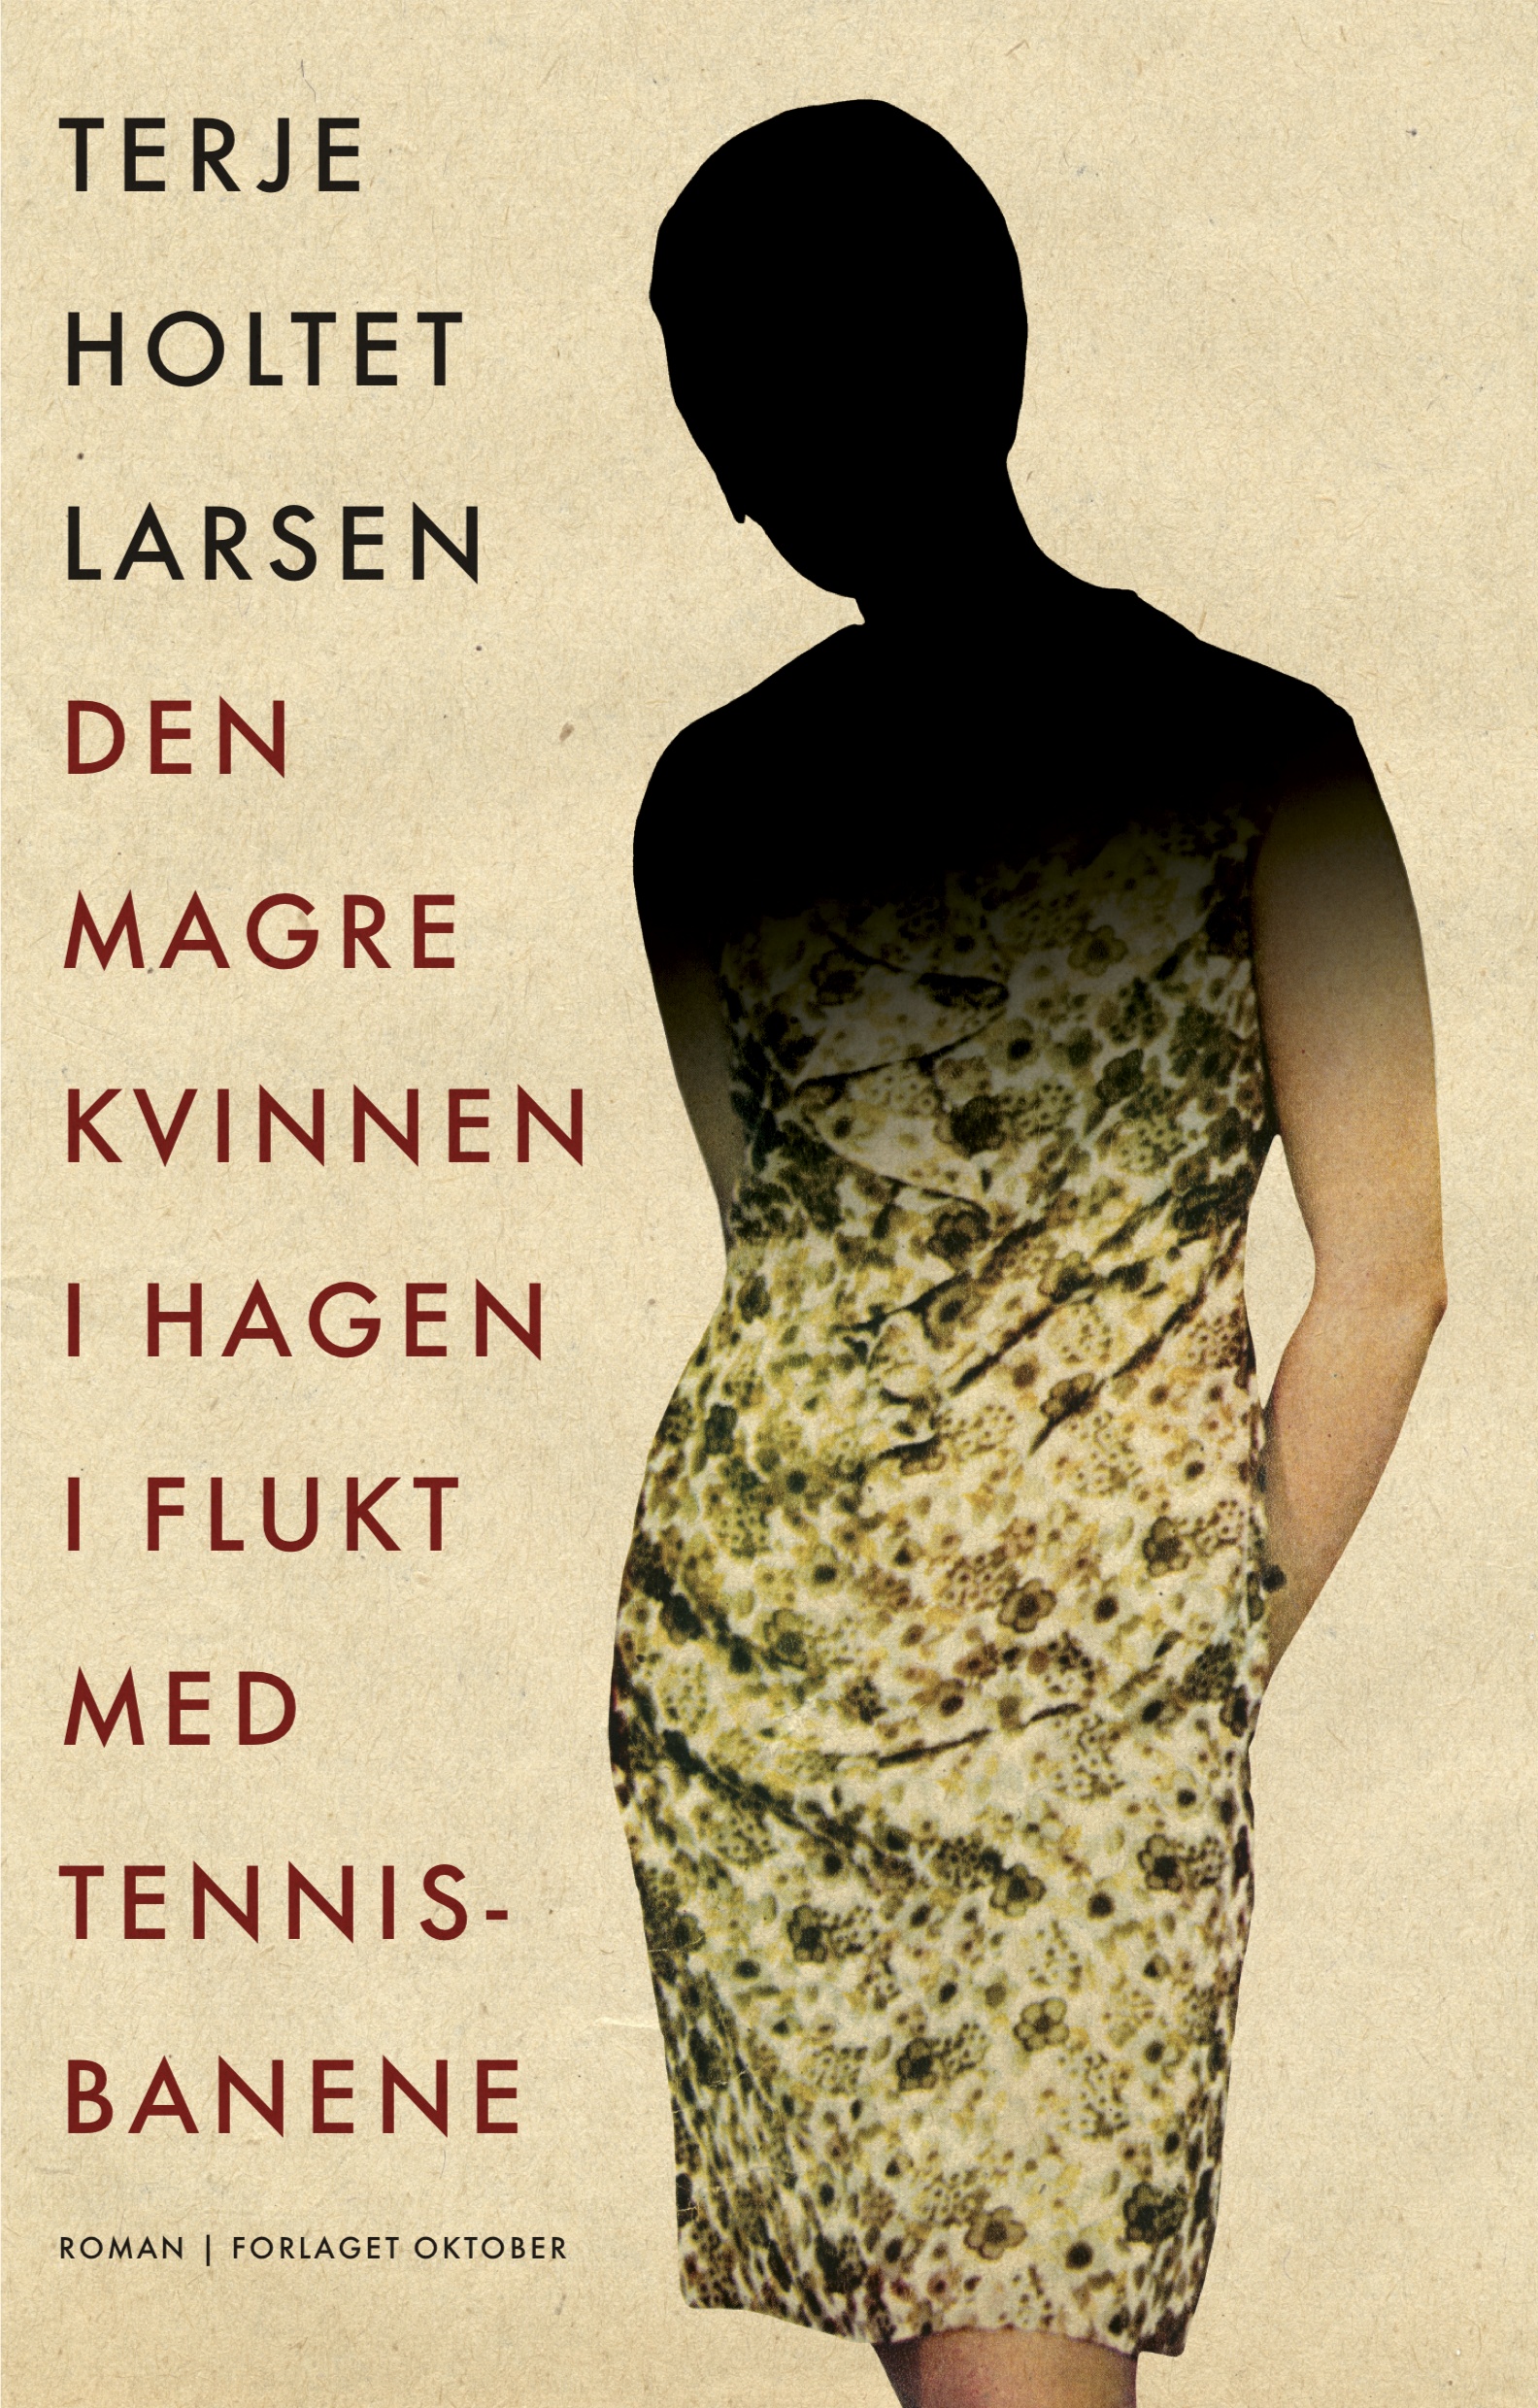 Terje Holtet Larsen Den magre kvinnen i hagen i flukt med tennisbanene